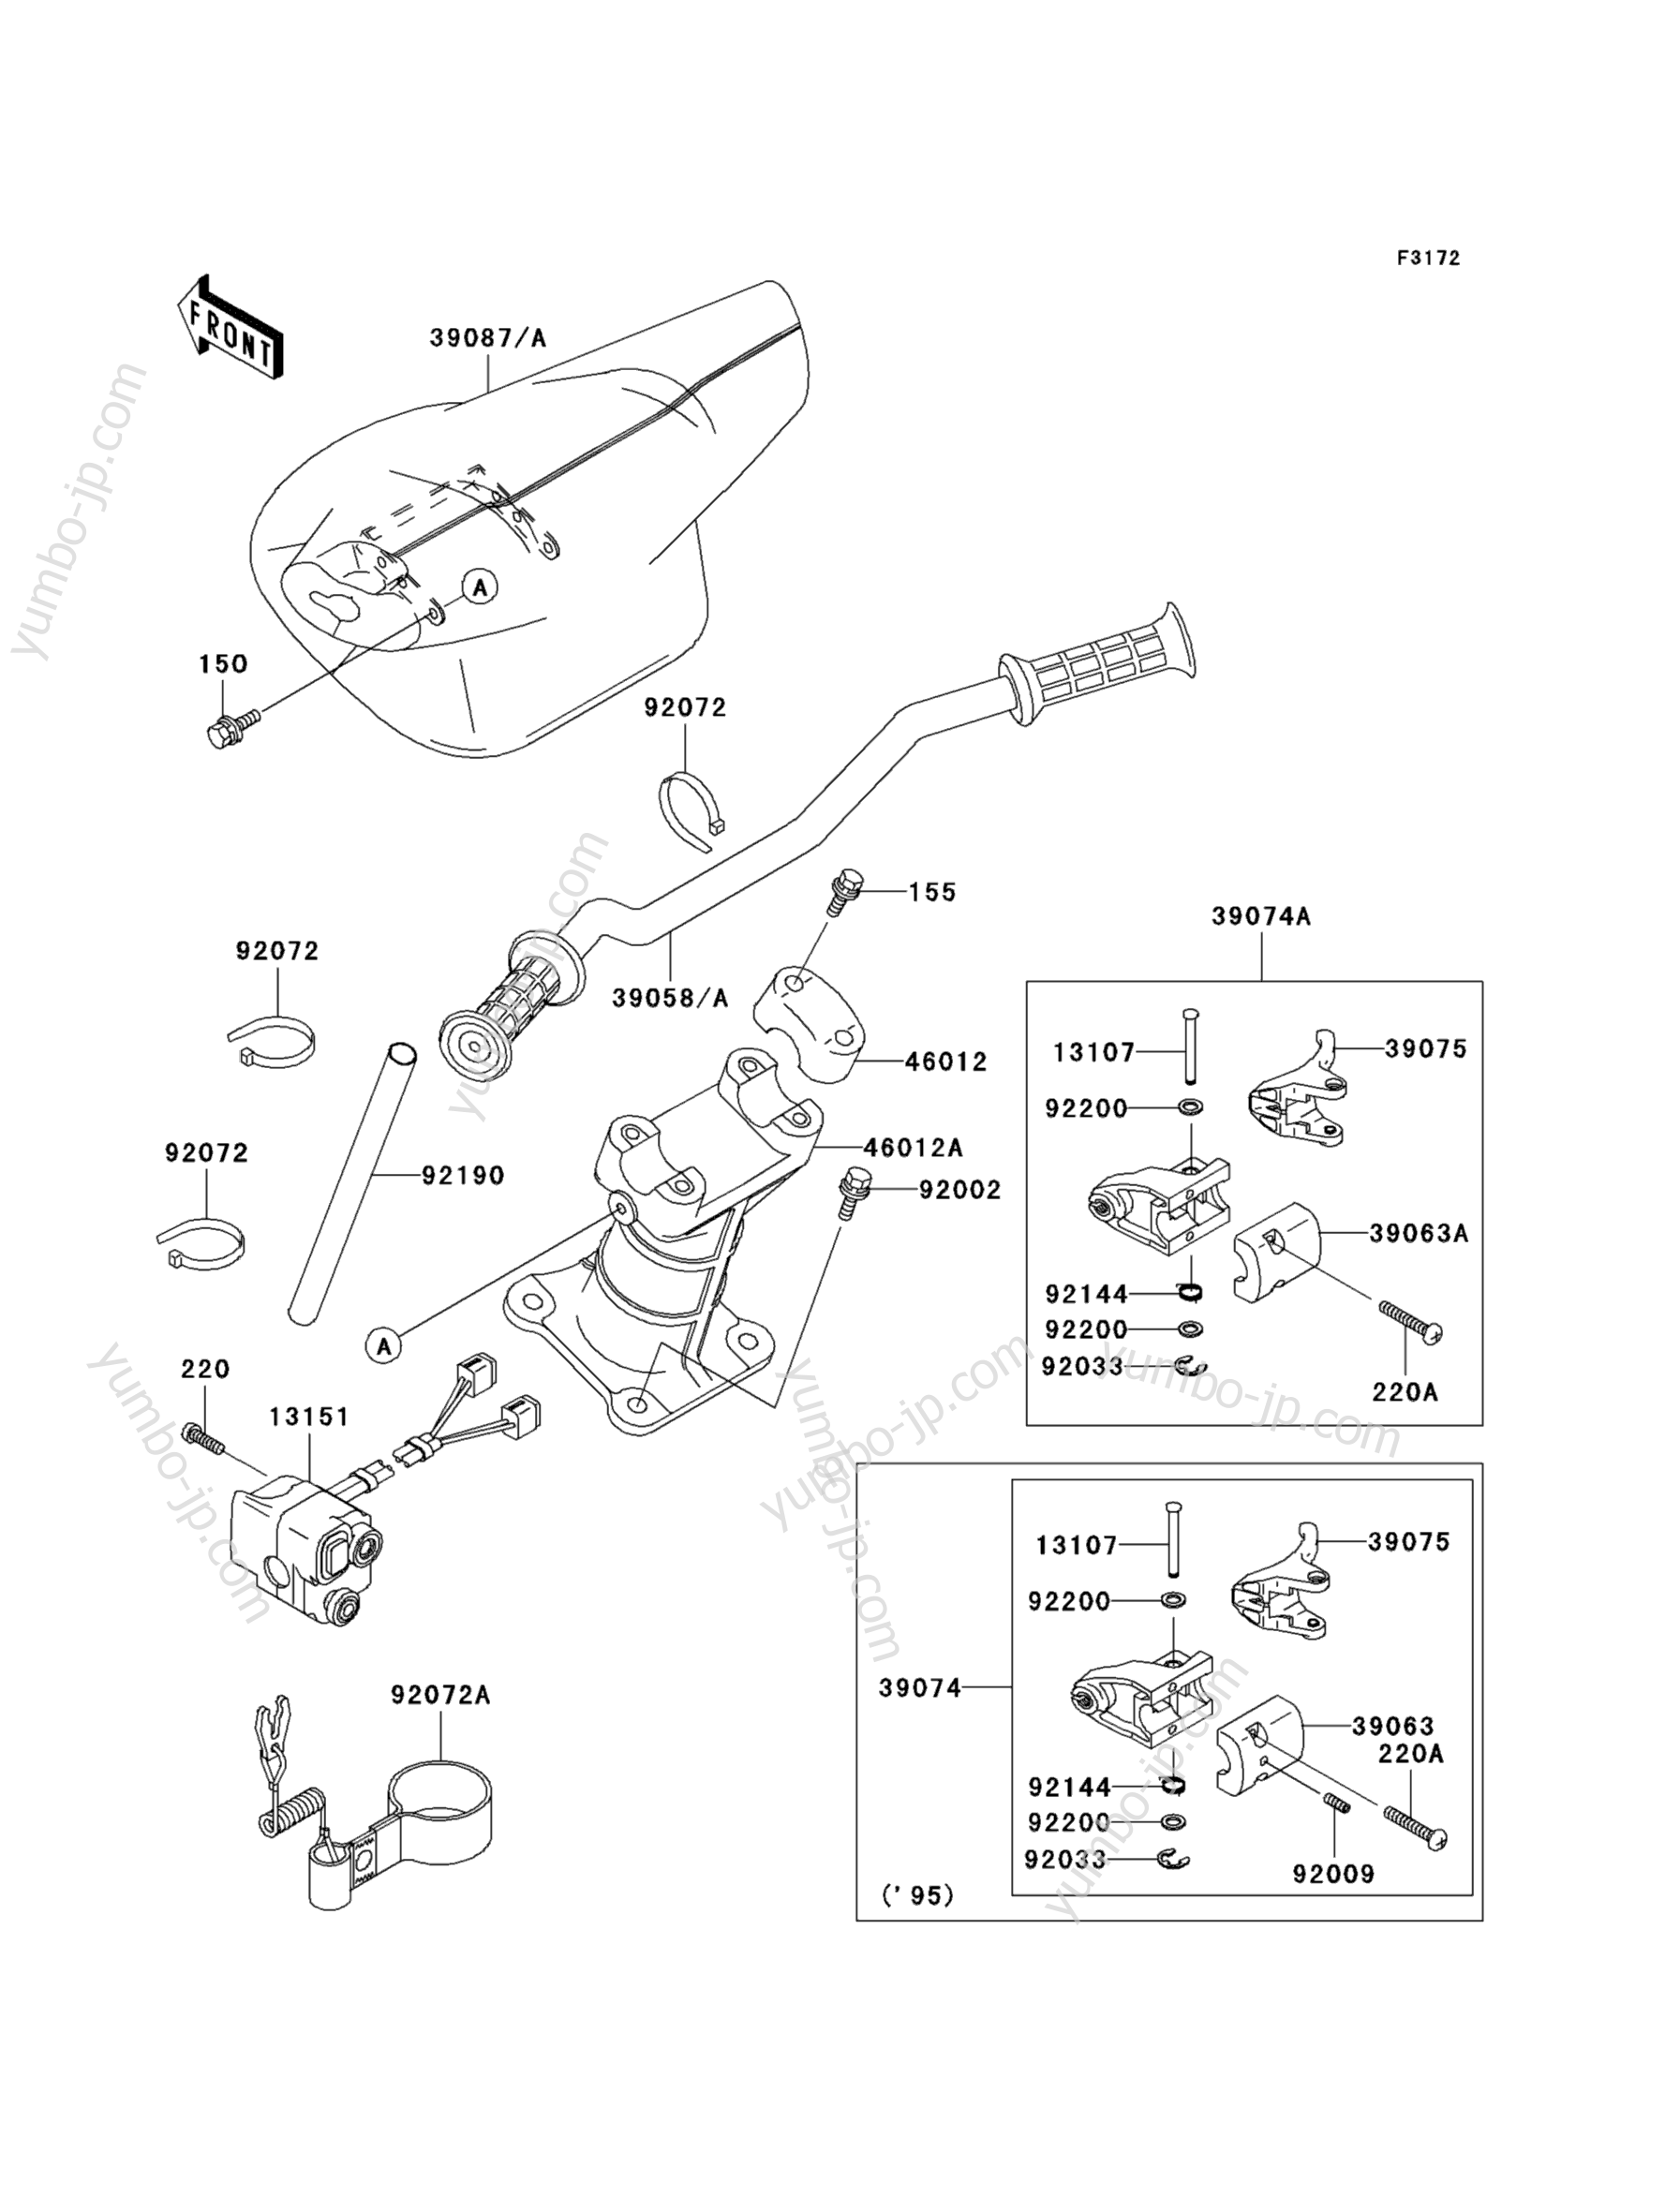 Румпель (рукоятка управления) для гидроциклов KAWASAKI JET SKI STS (JT750-B3) 1997 г.